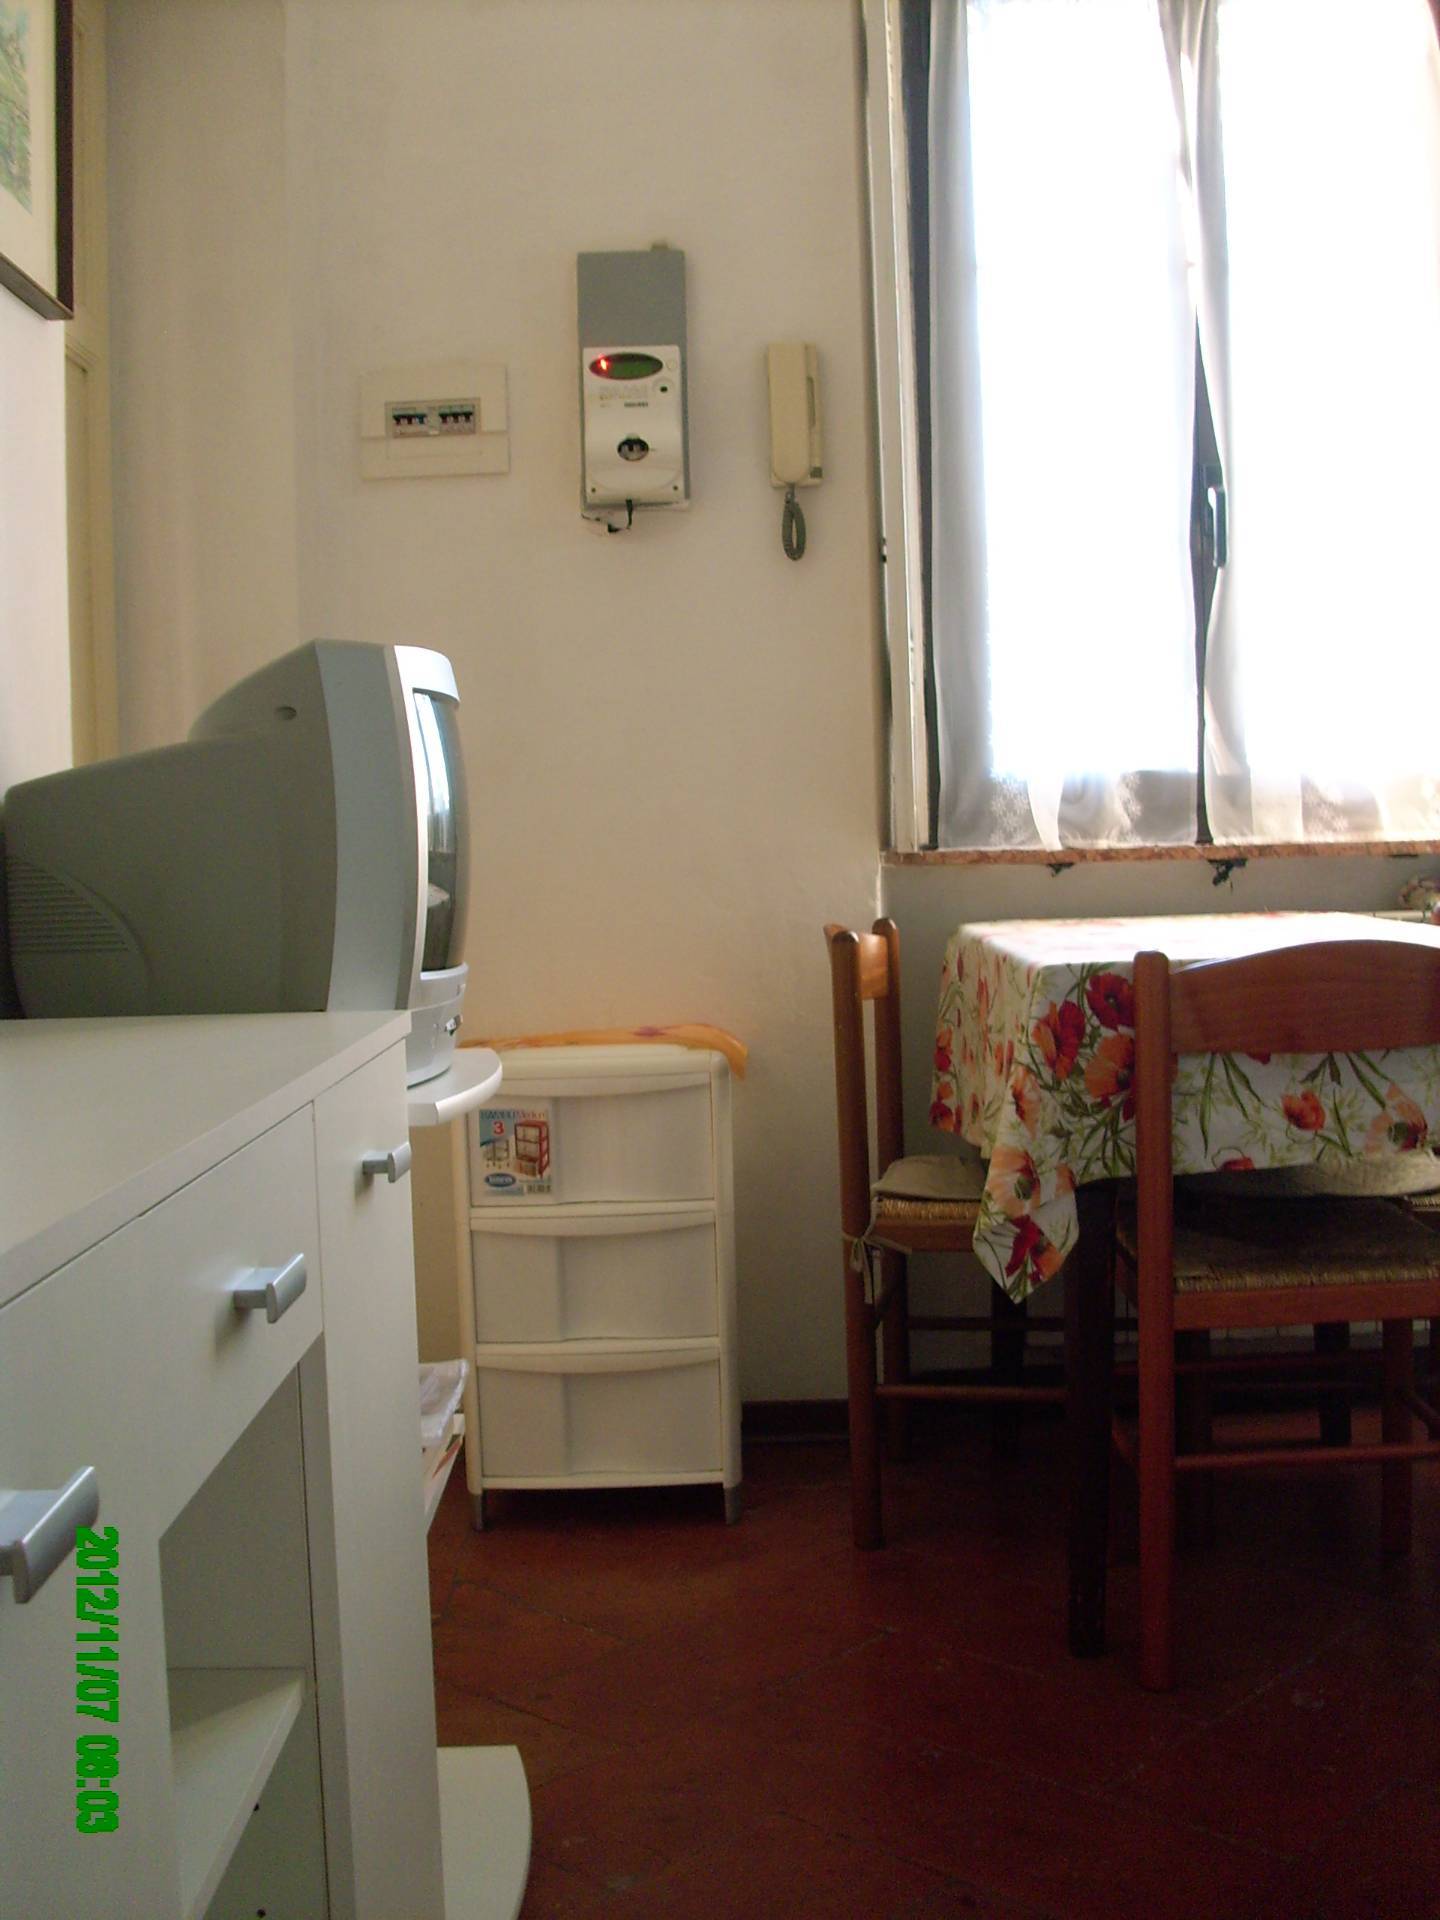 Appartamenti In Affitto Novara Privati : Trilocale in affitto a Novara, Pernate. 520 €, 108 mq, 3 ...